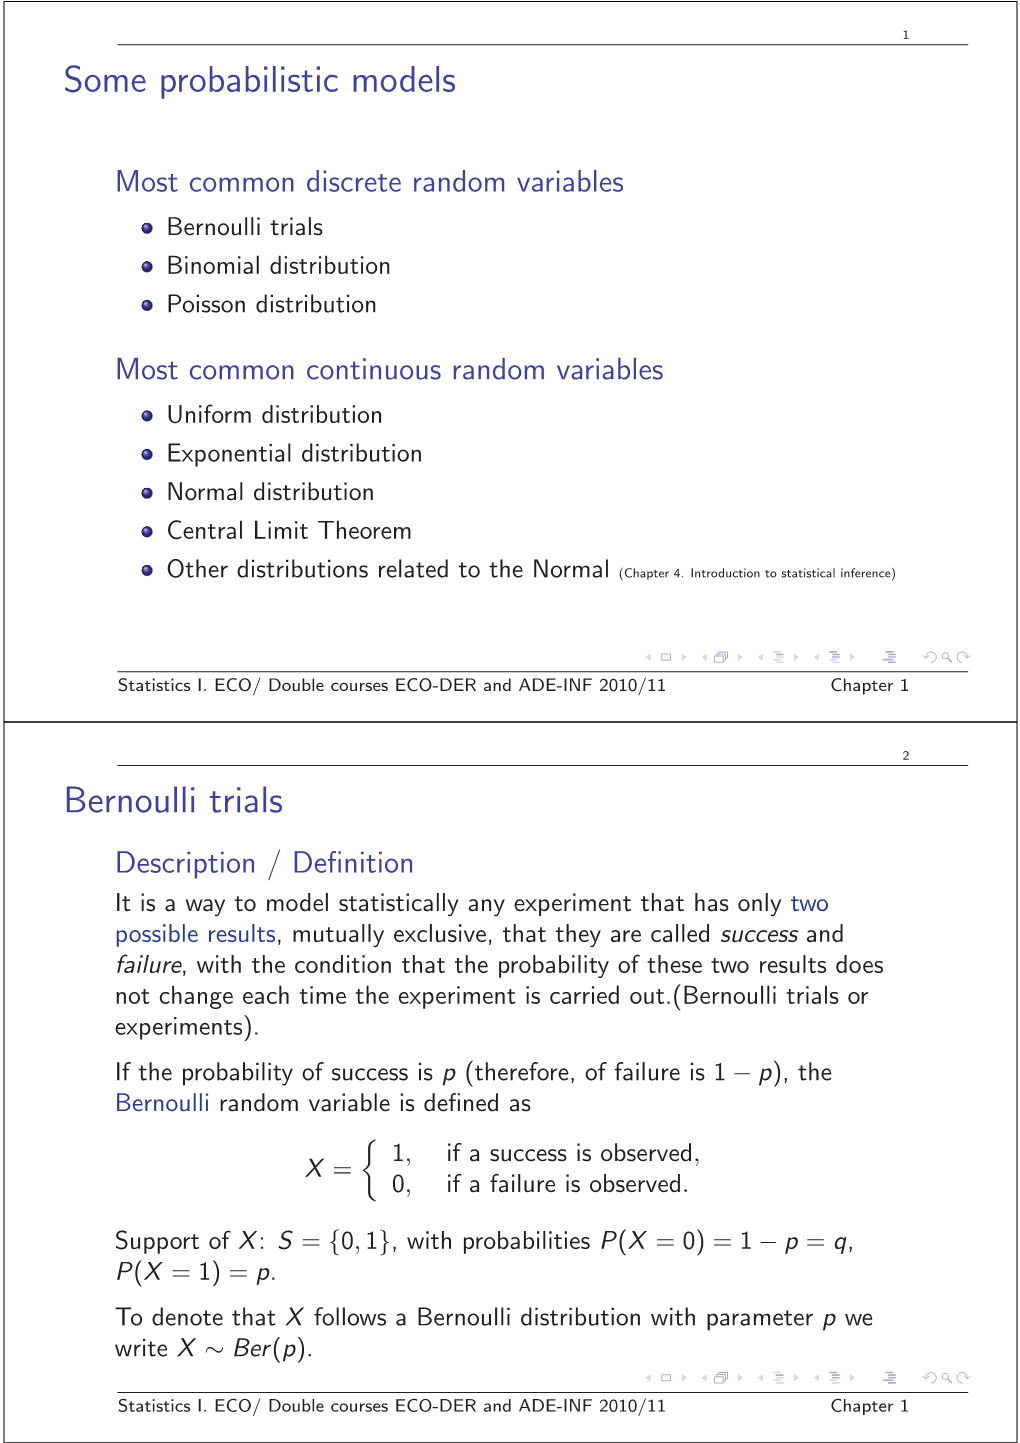 Some Probabilistic Models Bernoulli Trials